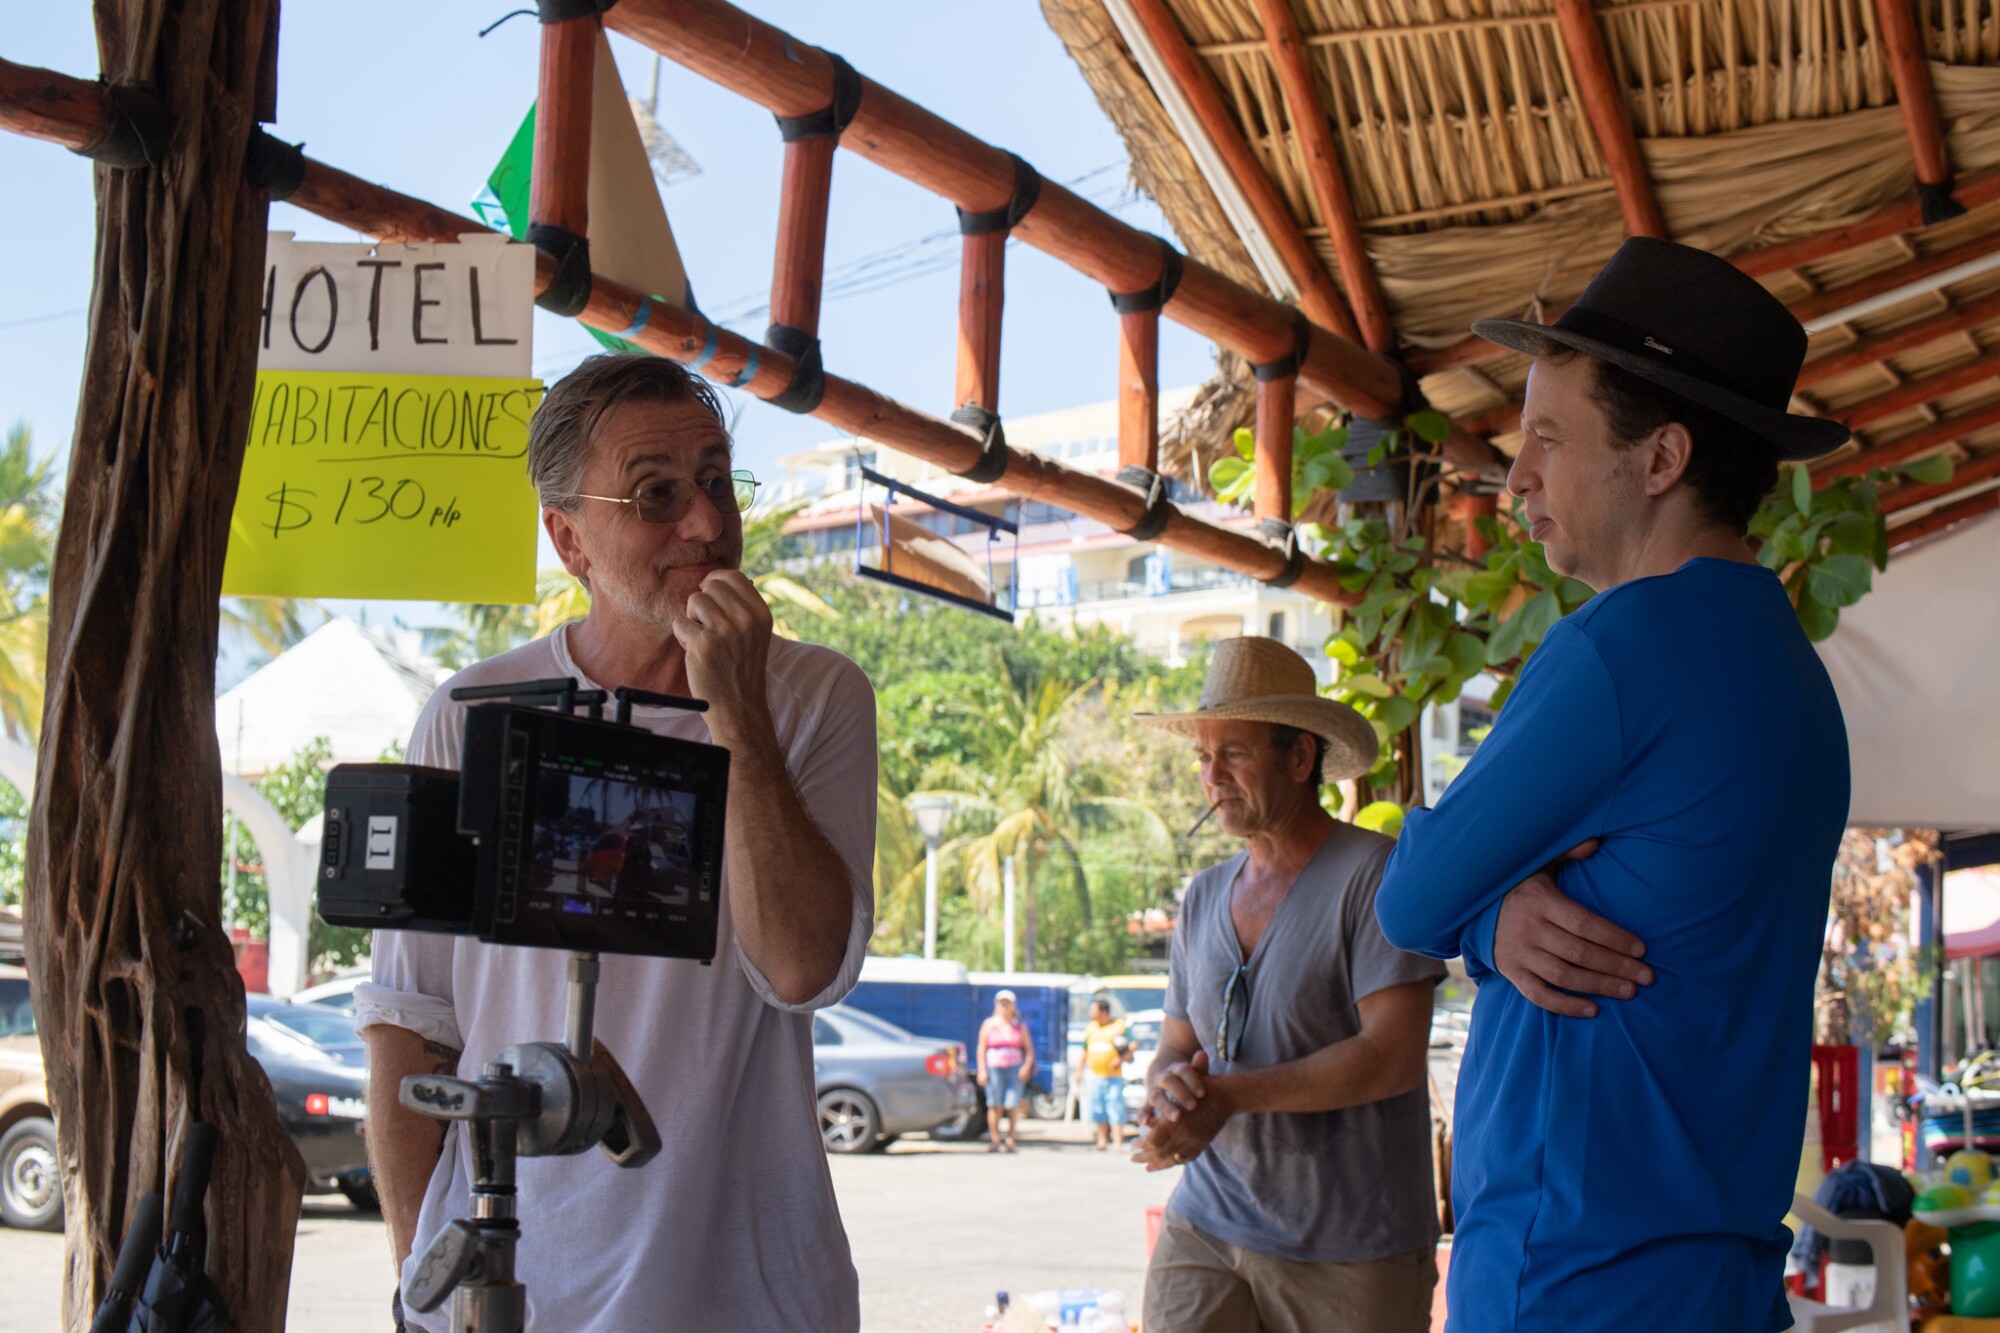 El director Michel Franco (der.) al lado del actor Tim Roth en el set de “Sundown”.